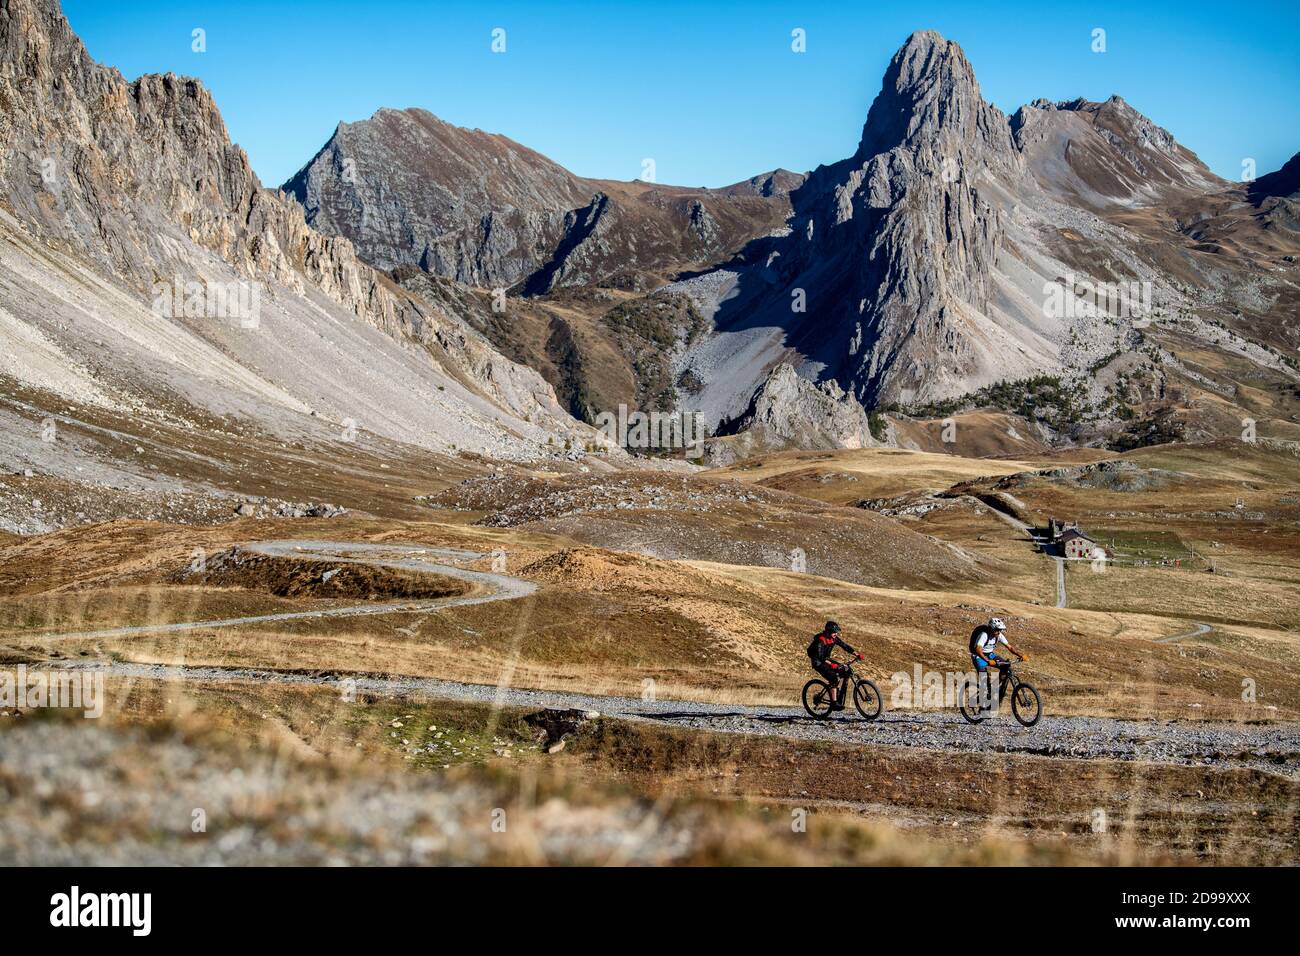 En automne, deux hommes se trouvent à vélo devant le refuge de Gardetta, à la frontière française de l'Italie, dans la vallée de Maira, dans les Alpes cottiennes. Banque D'Images